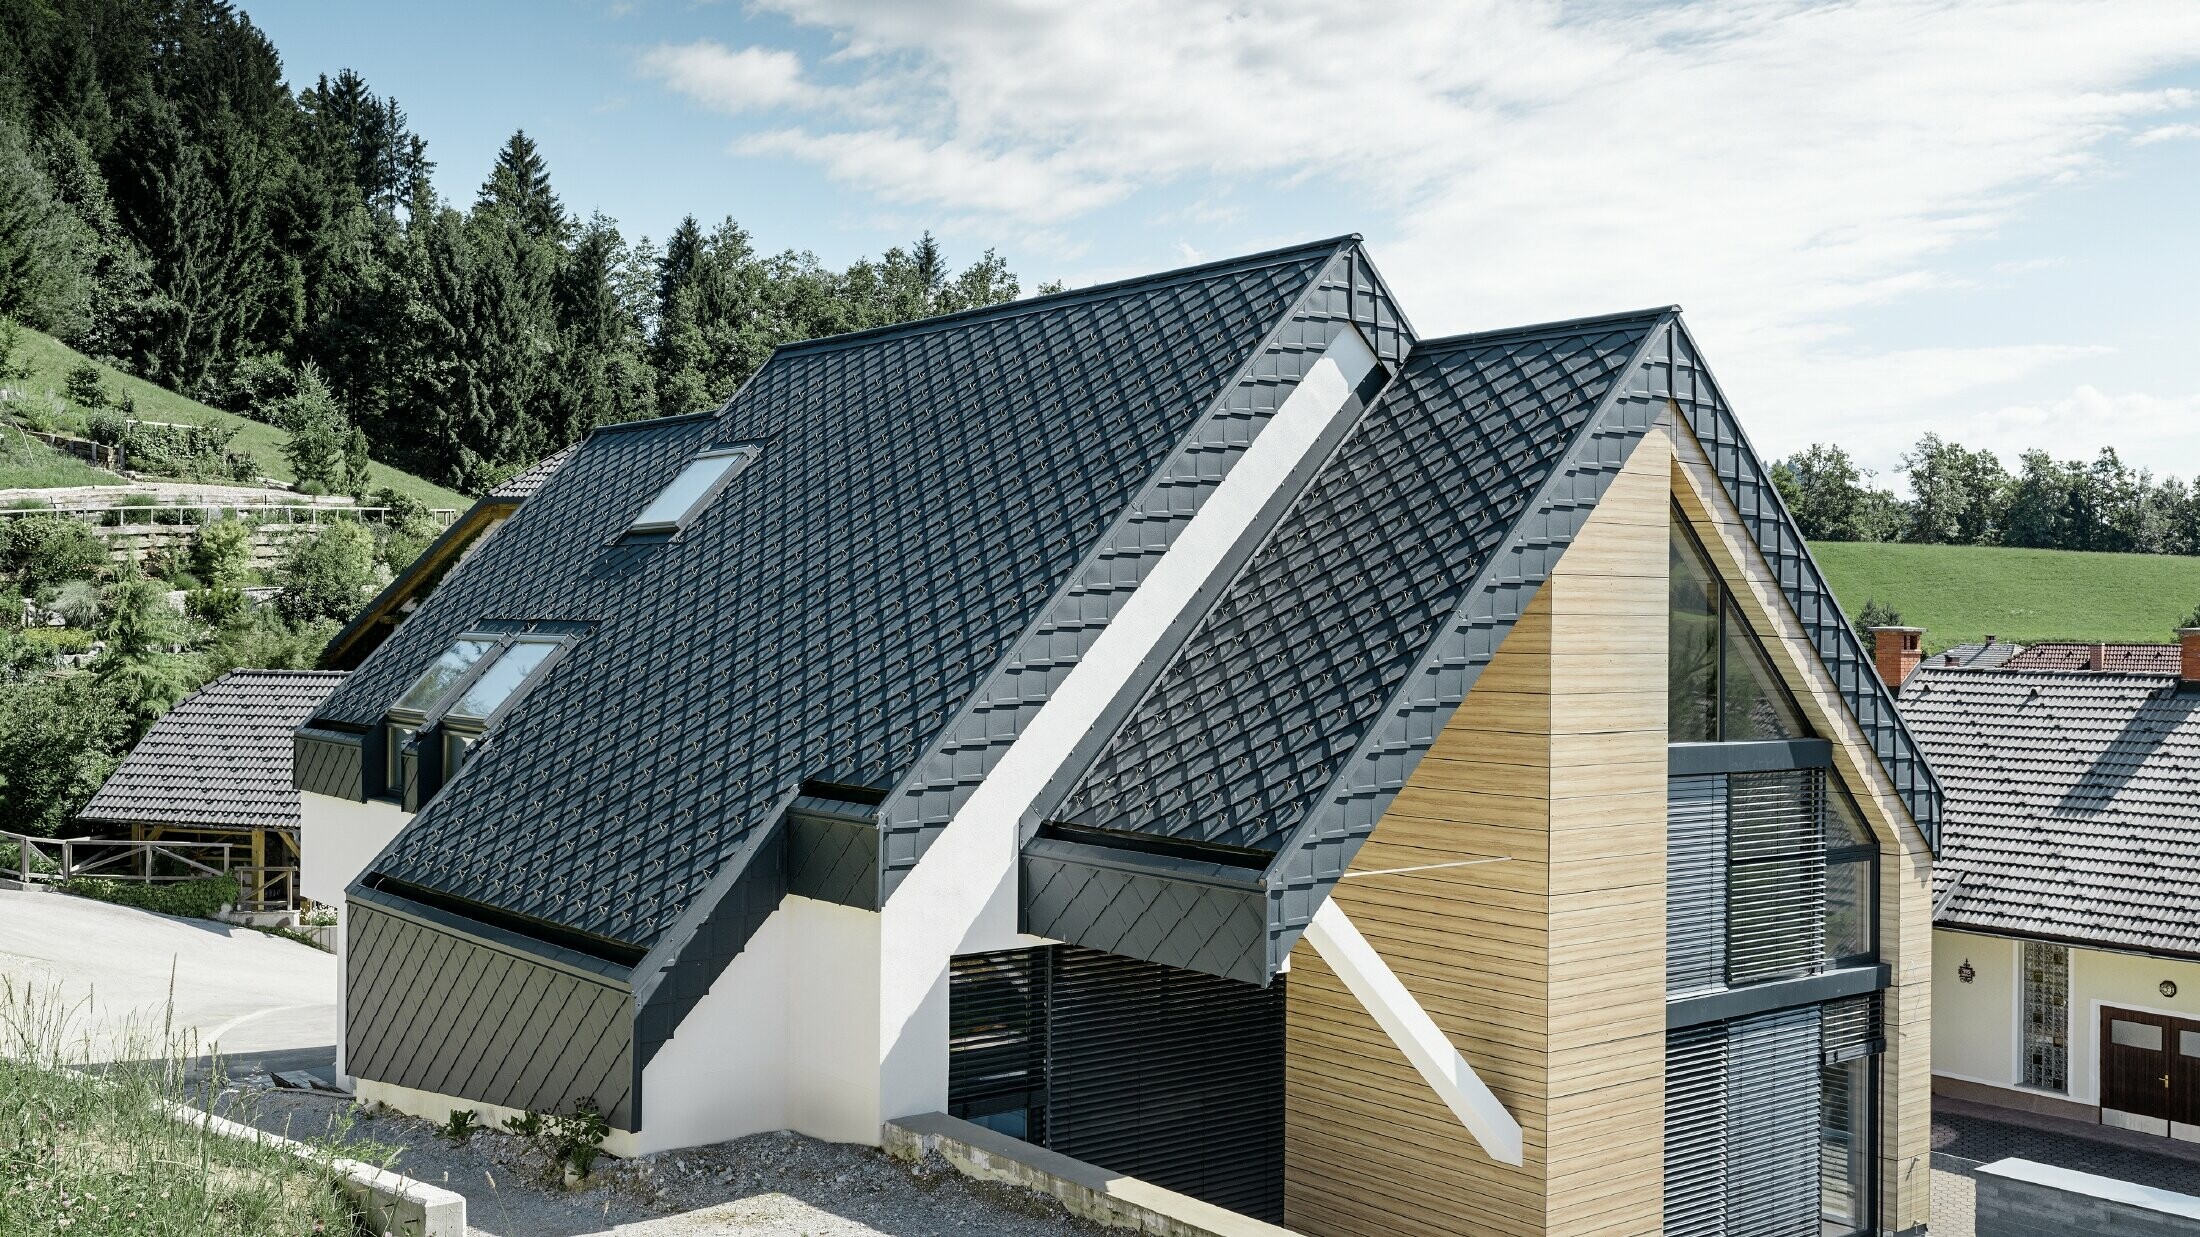 Einfamilienhaus mit Satteldach ohne Dachvorsprung mit einer Fassade in Holzoptik und einem Aluminiumdach in anthrazit